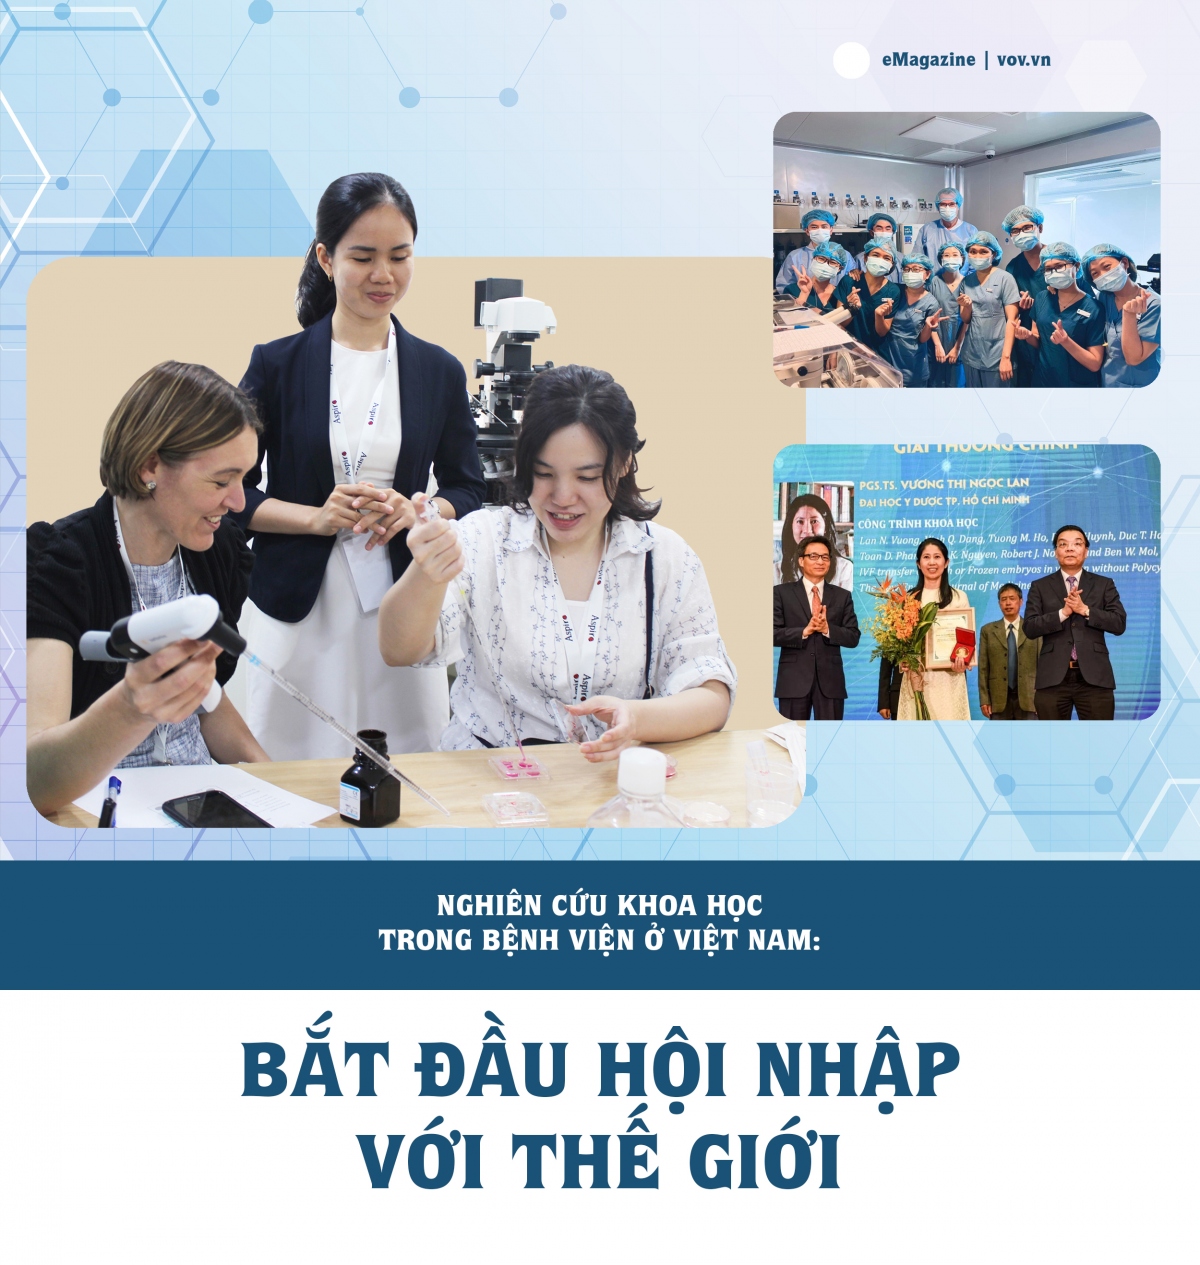 Nghiên cứu khoa học trong bệnh viện ở Việt Nam: Bắt đầu hội nhập với thế giới